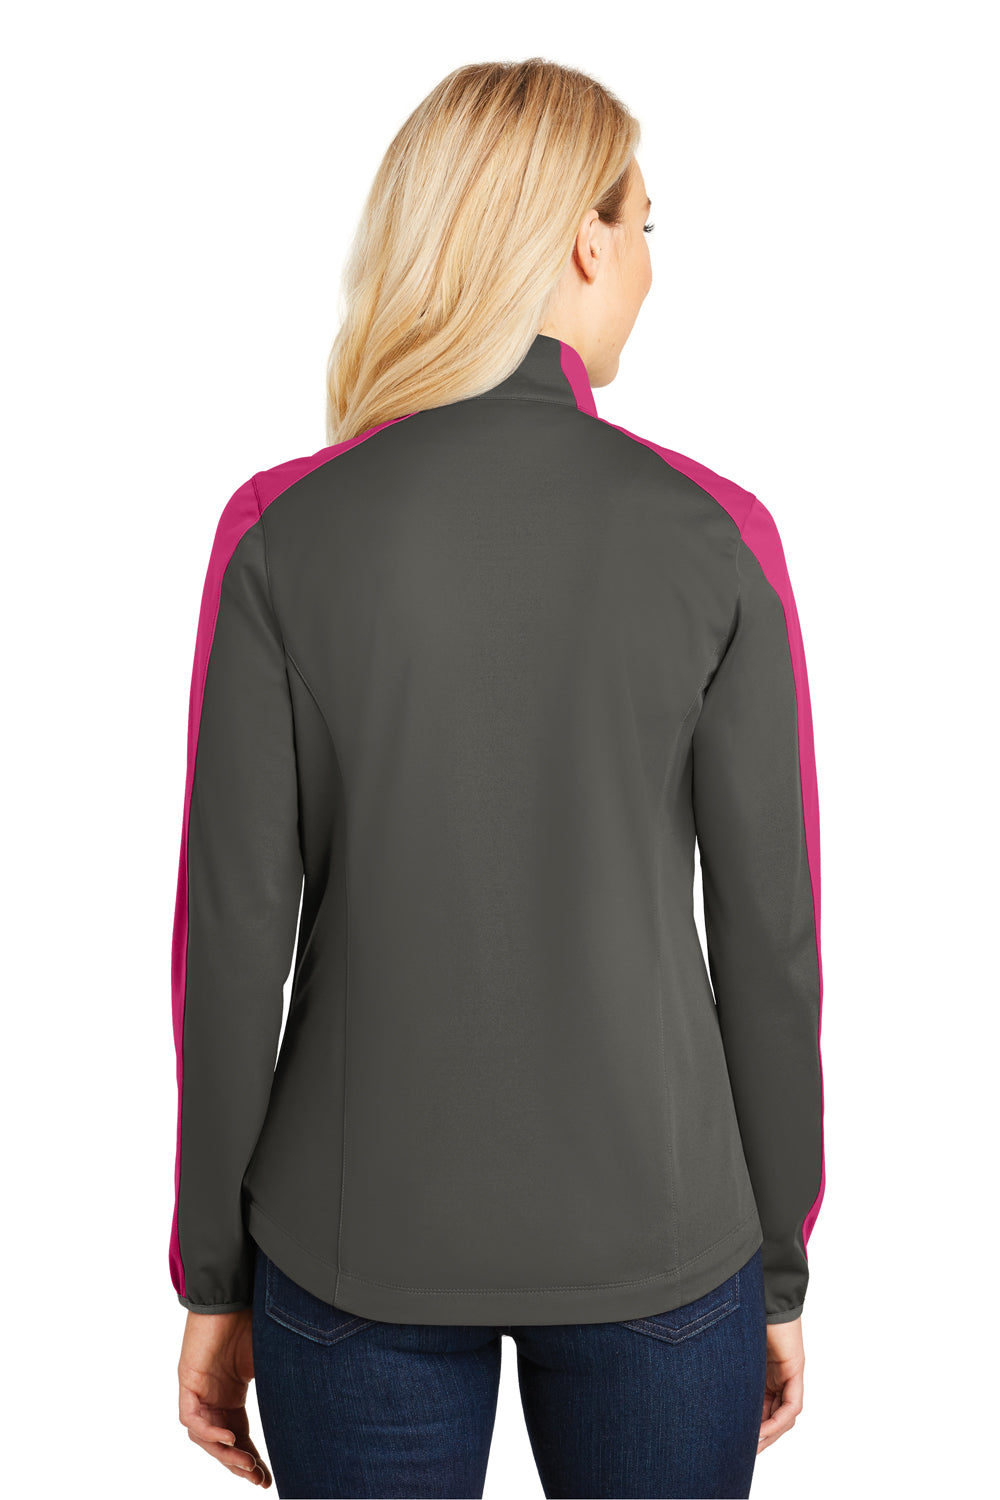 Port Authority L718 Womens Active Wind & Water Resistant Full Zip Jacket Grey Steel/Azalea Pink Back